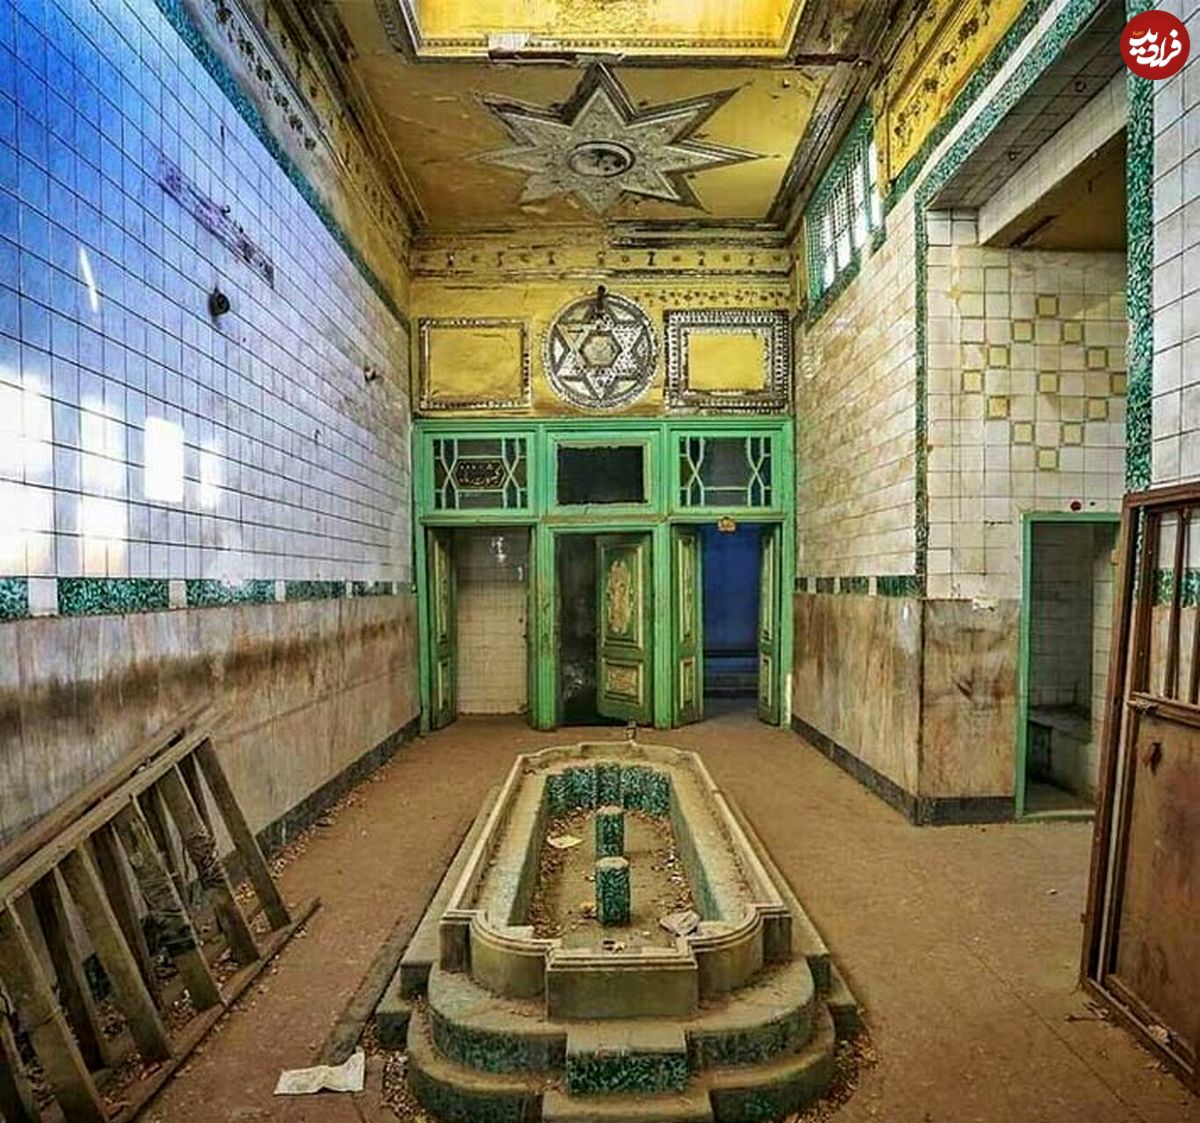 گرمابه کشوریه؛ نخستین حمام مدرن تهران